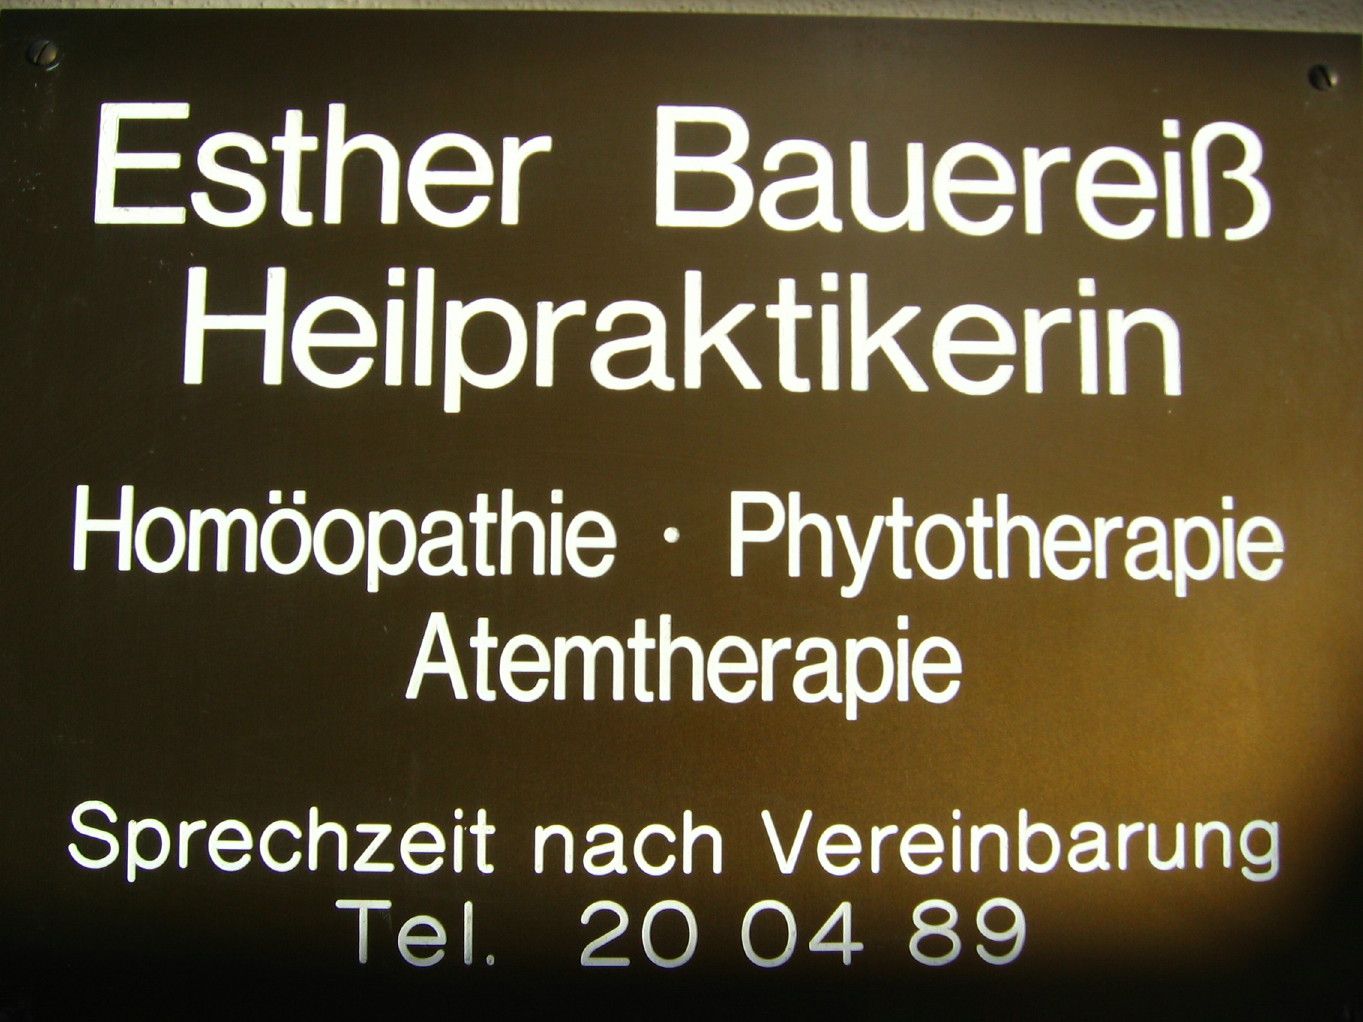 Naturheilpraxis Esther Bauereiß, Heilpraktikerin Bamberg, Homöopathie Phythotherapie Atemtherapie